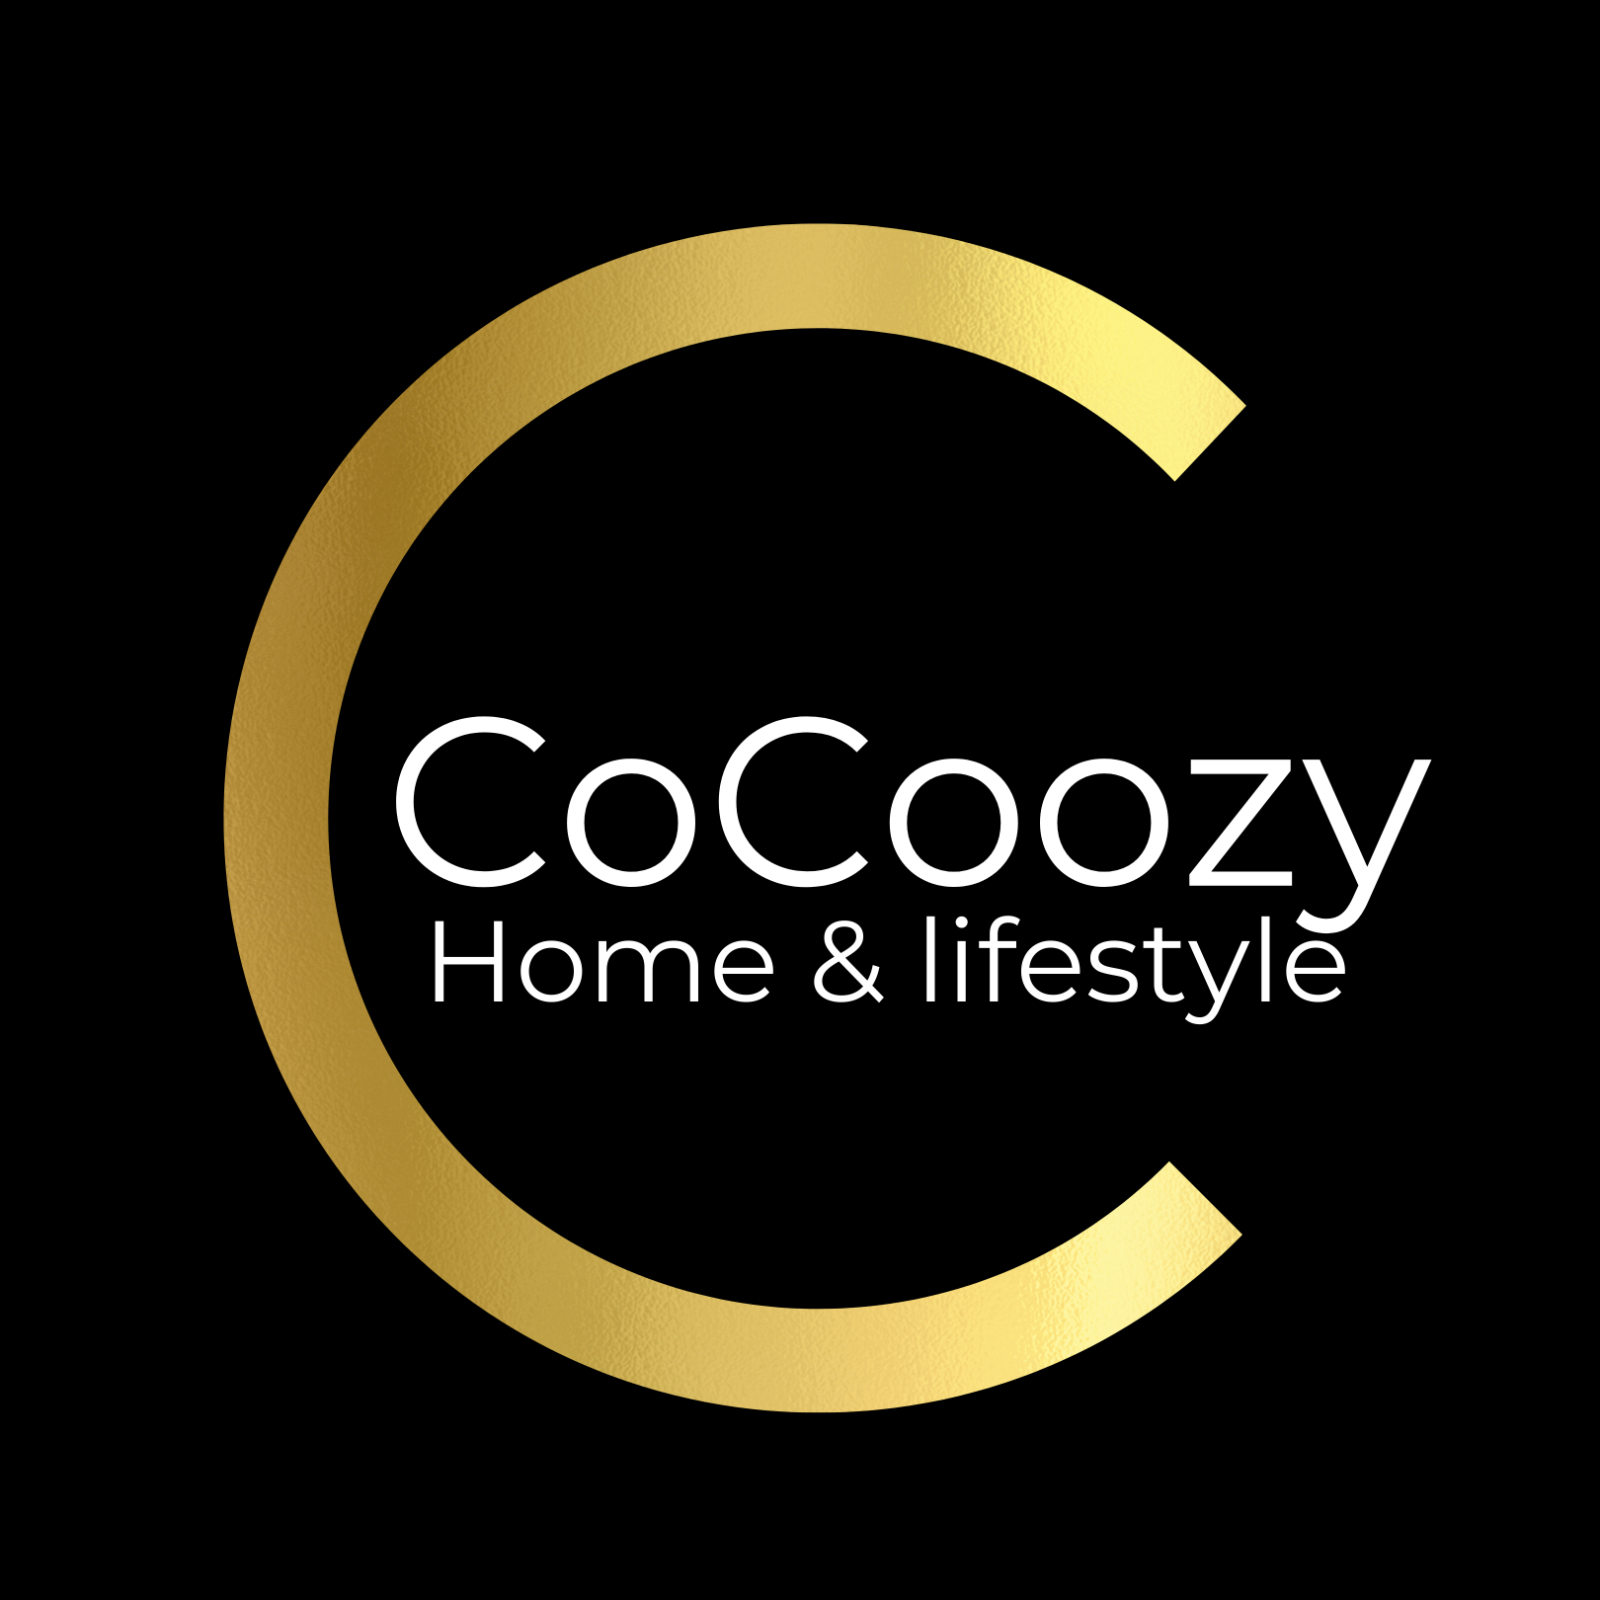 CoCoozy